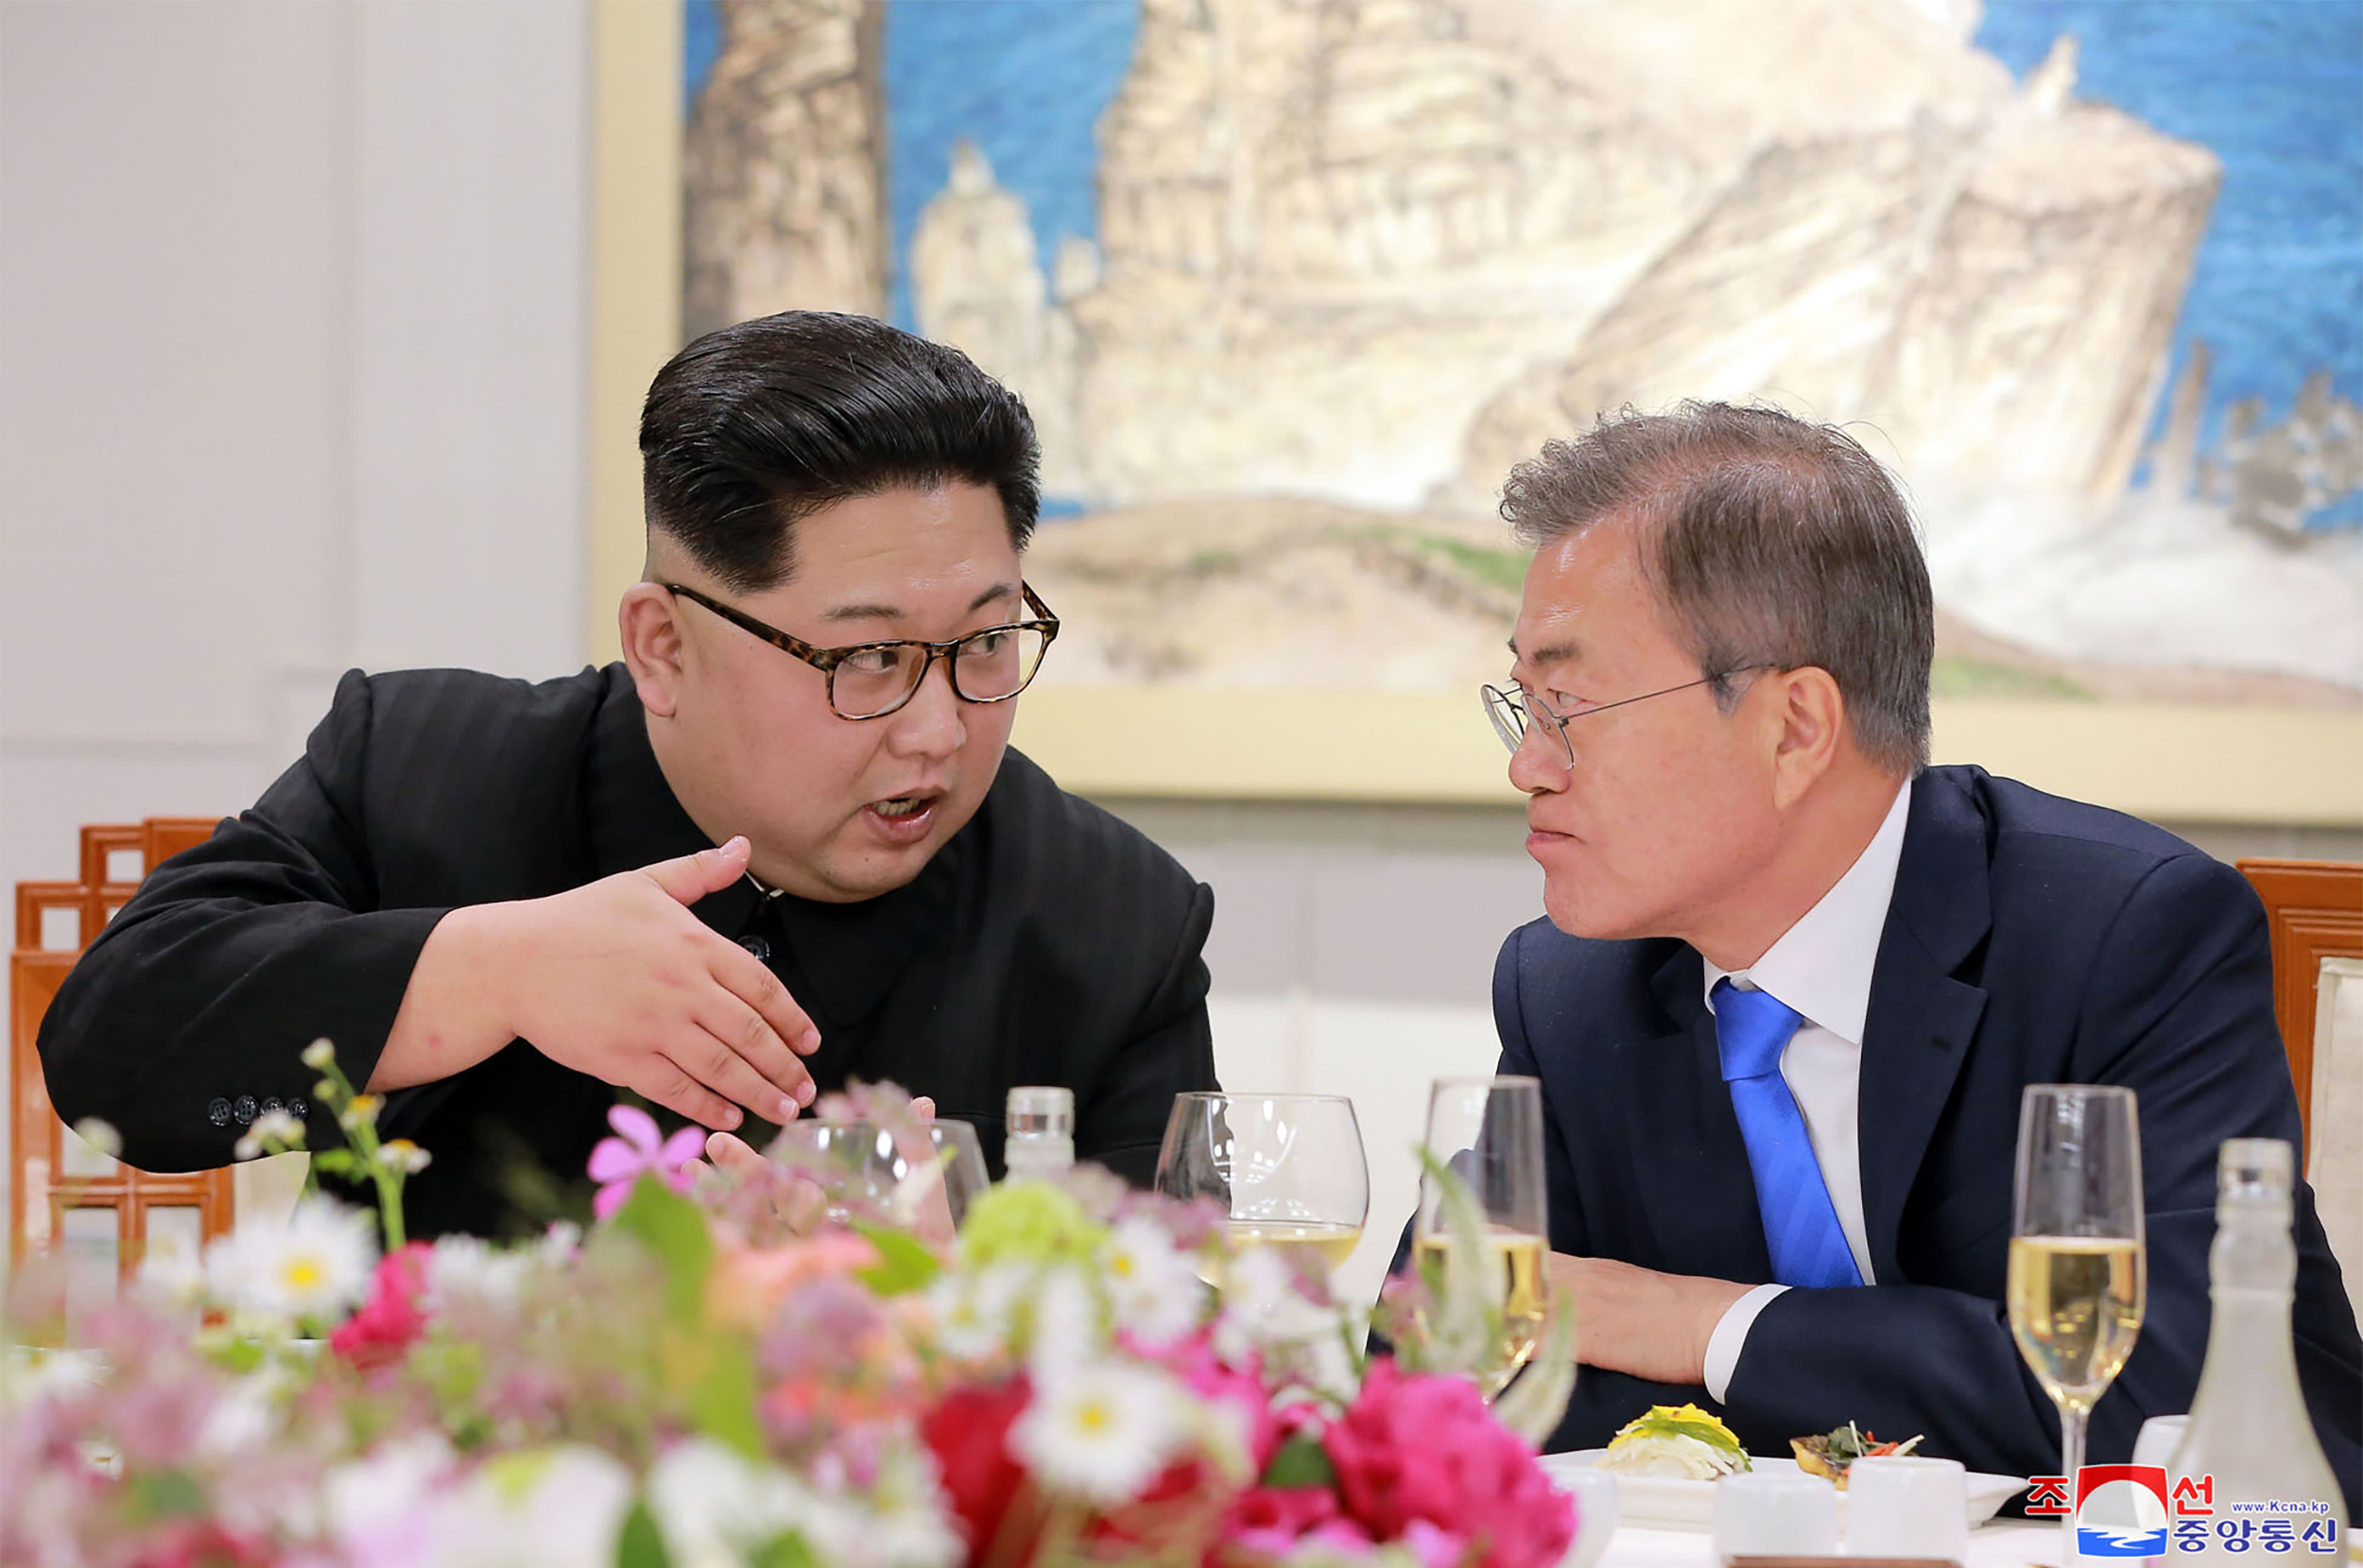 المحادثات بين زعيمى كوريا الشمالية والجنوبية 